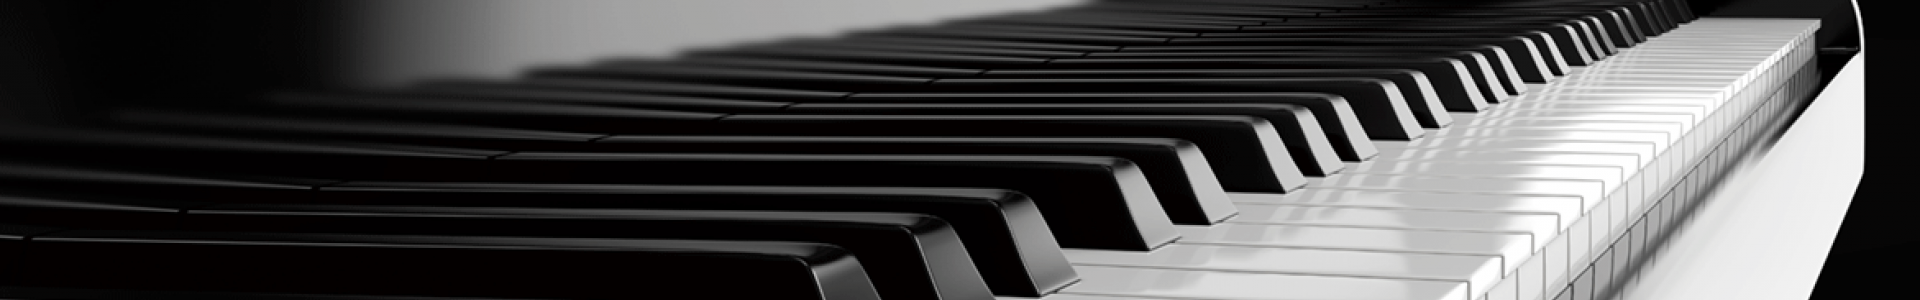 selitev-klavirjev-pianinov